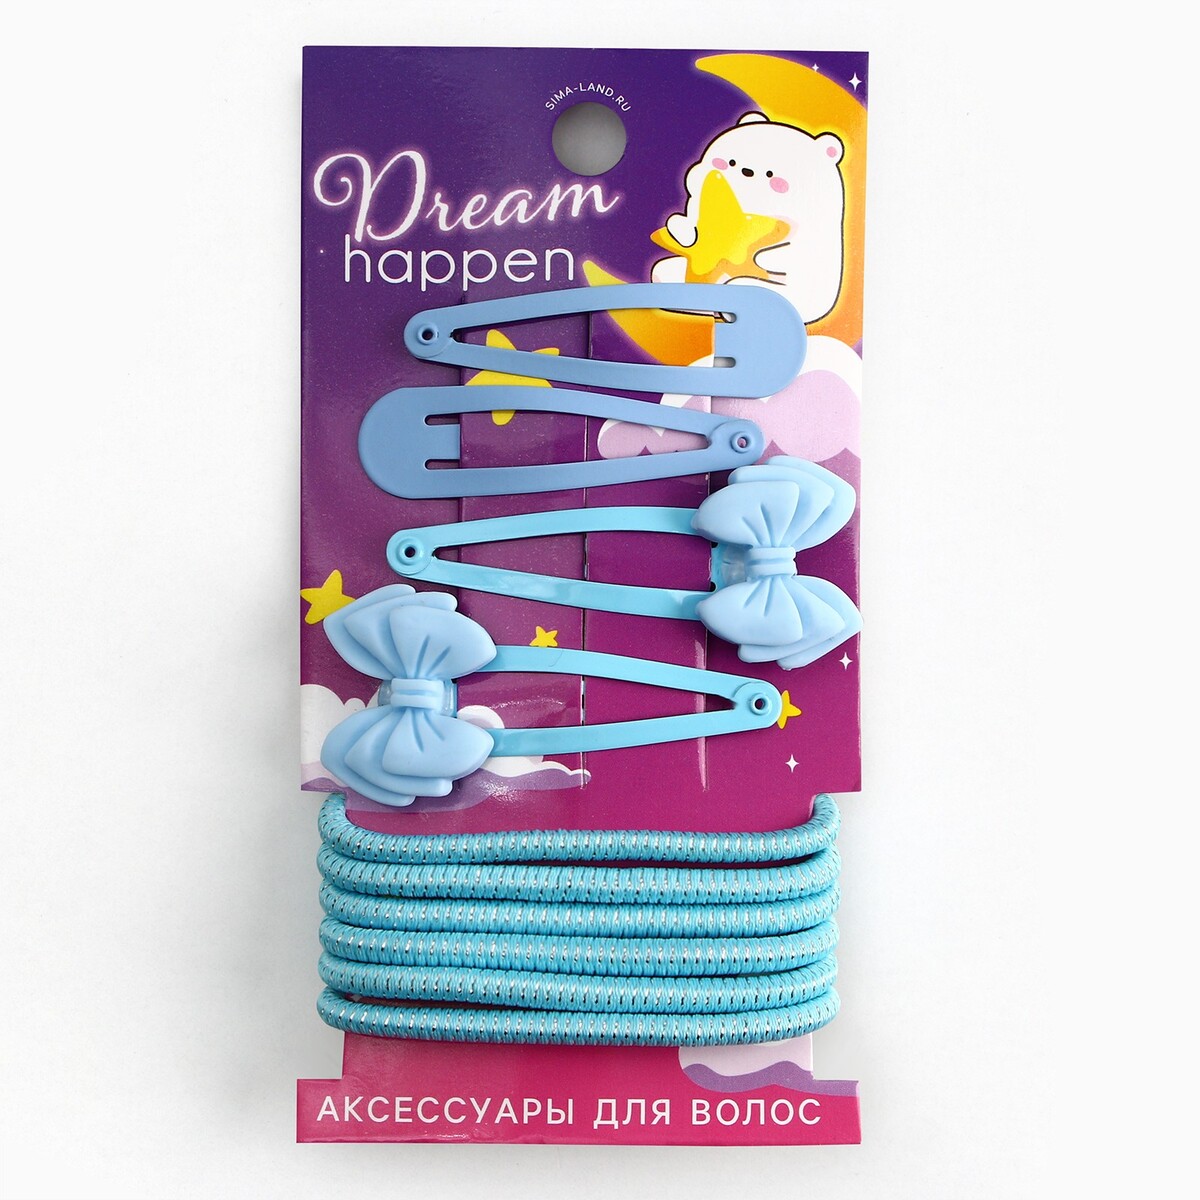 Набор аксессуаров для волос dream happen, голубые тона набор выкручивателей для клещей 2 размера голубые